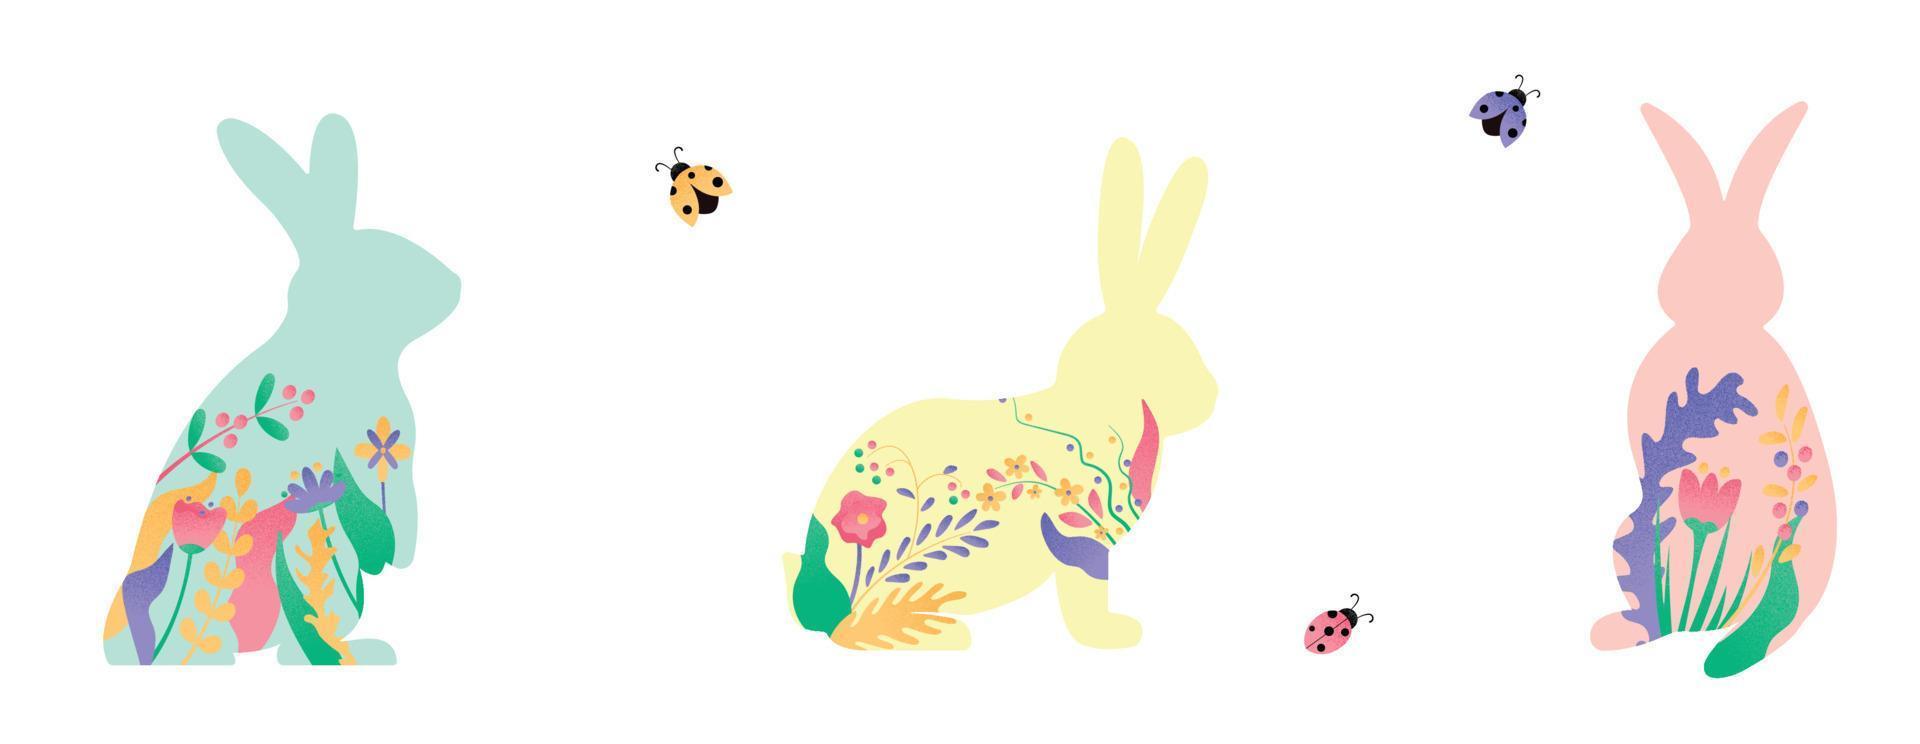 Osterhasen-Set-Vektor-Illustration. rosafarbenes, blaues, gelbes Kaninchen mit Blumen, Blumendekoration innerhalb der Hasenform lokalisiert auf weißem Hintergrund. niedlicher druckdesigncharakter im flachen karikaturstil vektor